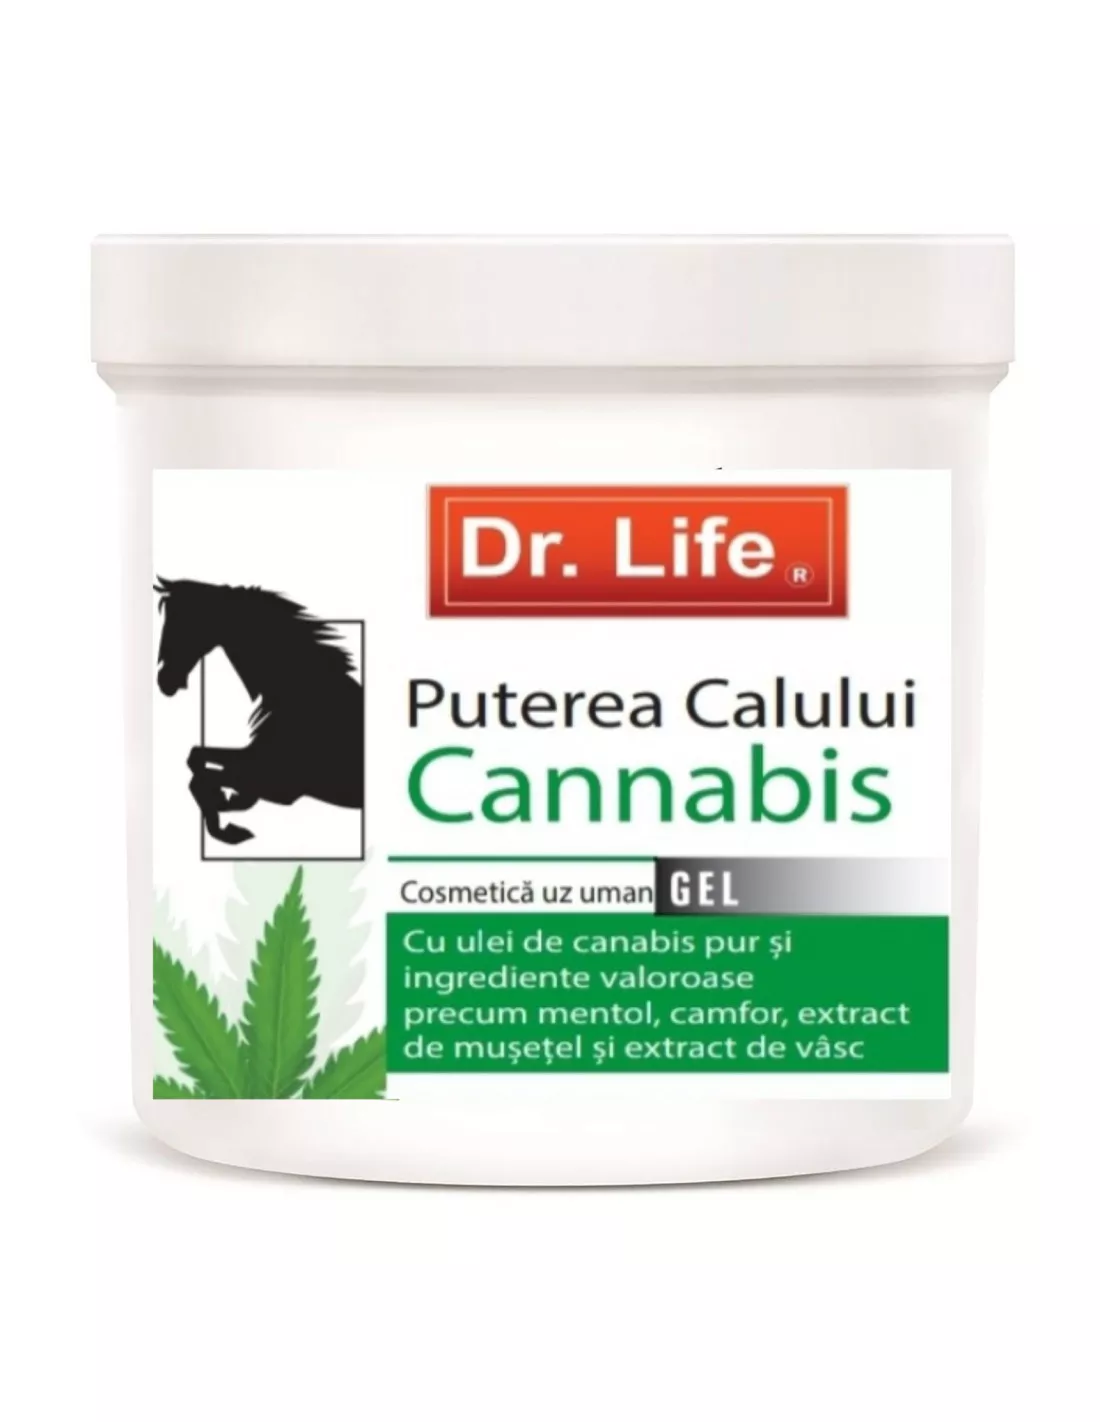 GEL PUTEREA CALULUI CANNABIS * 250 ML DR.LIFE DL112, [],farmacom.ro